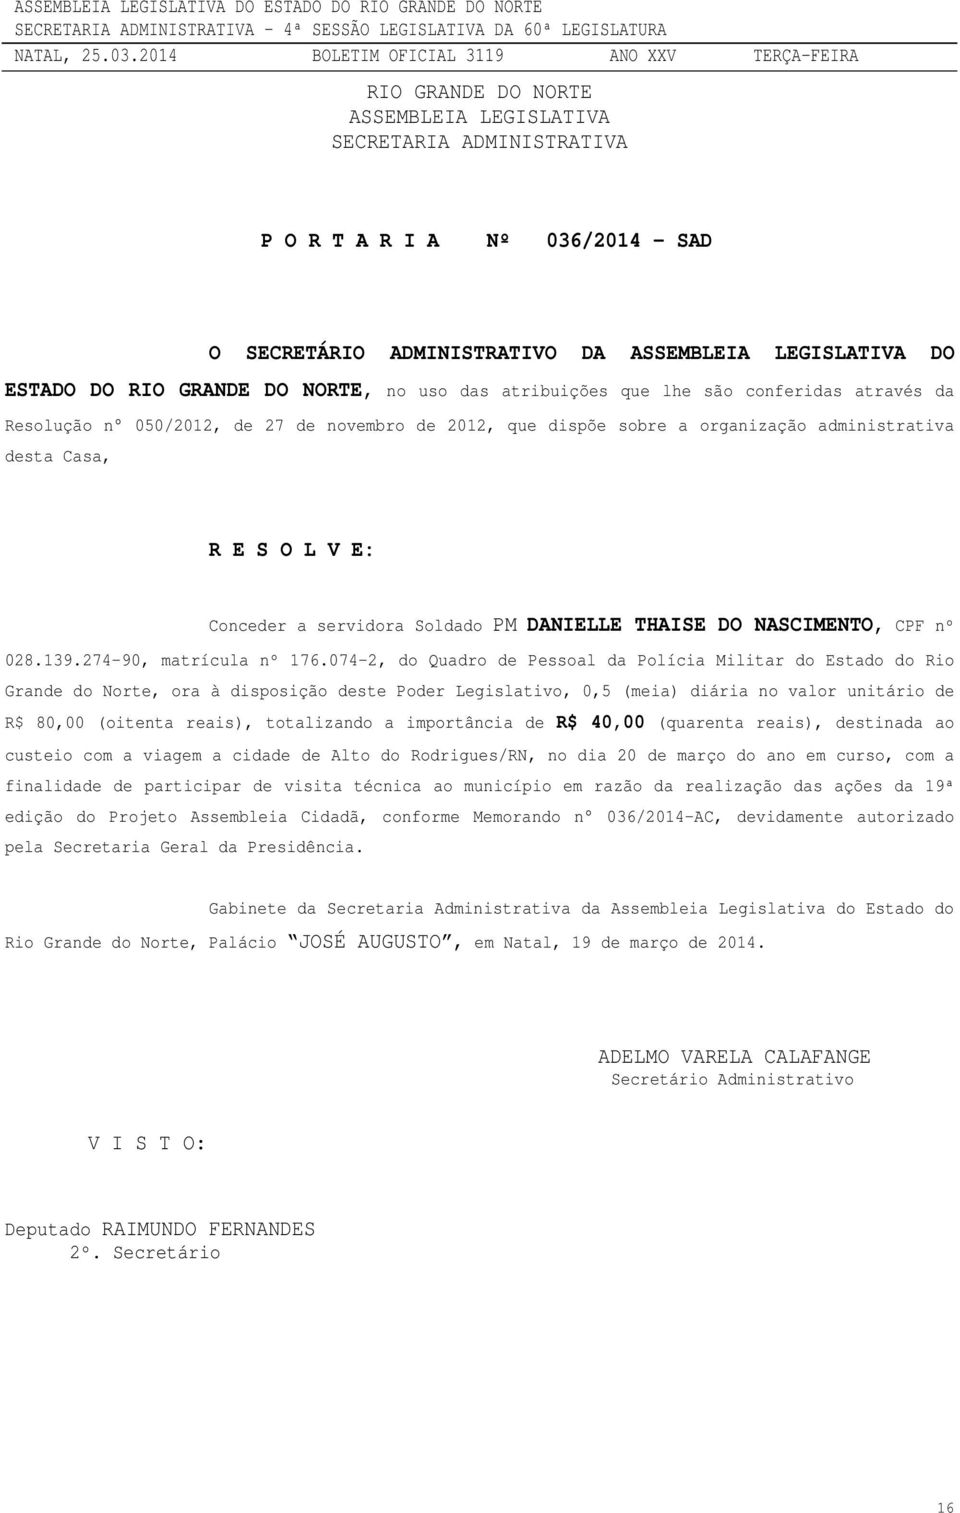 074-2, do Quadro de Pessoal da Polícia Militar do Estado do Rio Grande do Norte, ora à disposição deste Poder Legislativo, 0,5 (meia) diária no valor unitário de R$ 80,00 (oitenta reais), totalizando